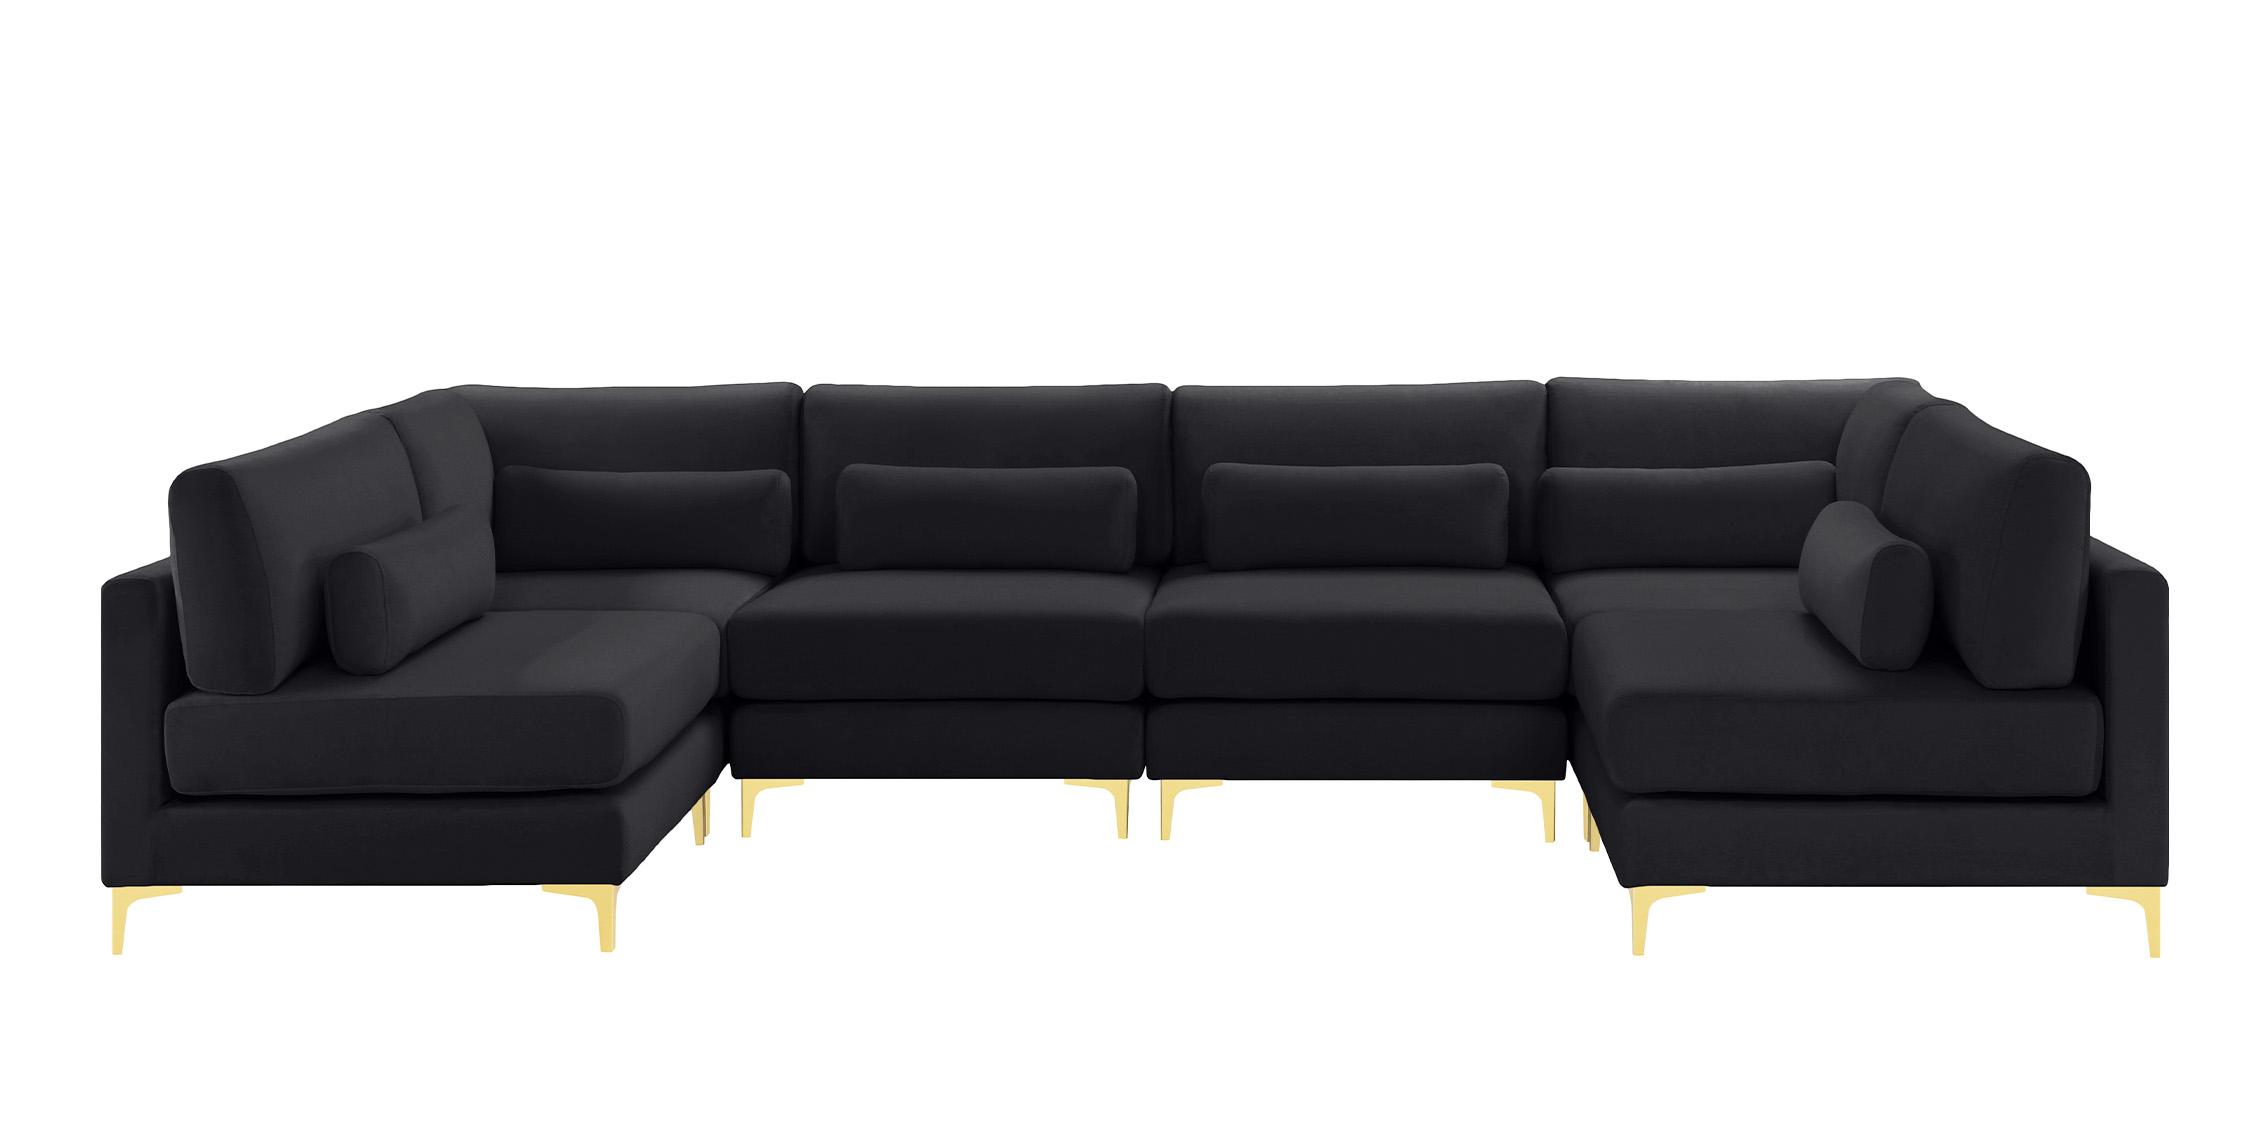 

    
Meridian Furniture JULIA 605Black-Sec6C Modular Sectional Sofa Black 605Black-Sec6C
